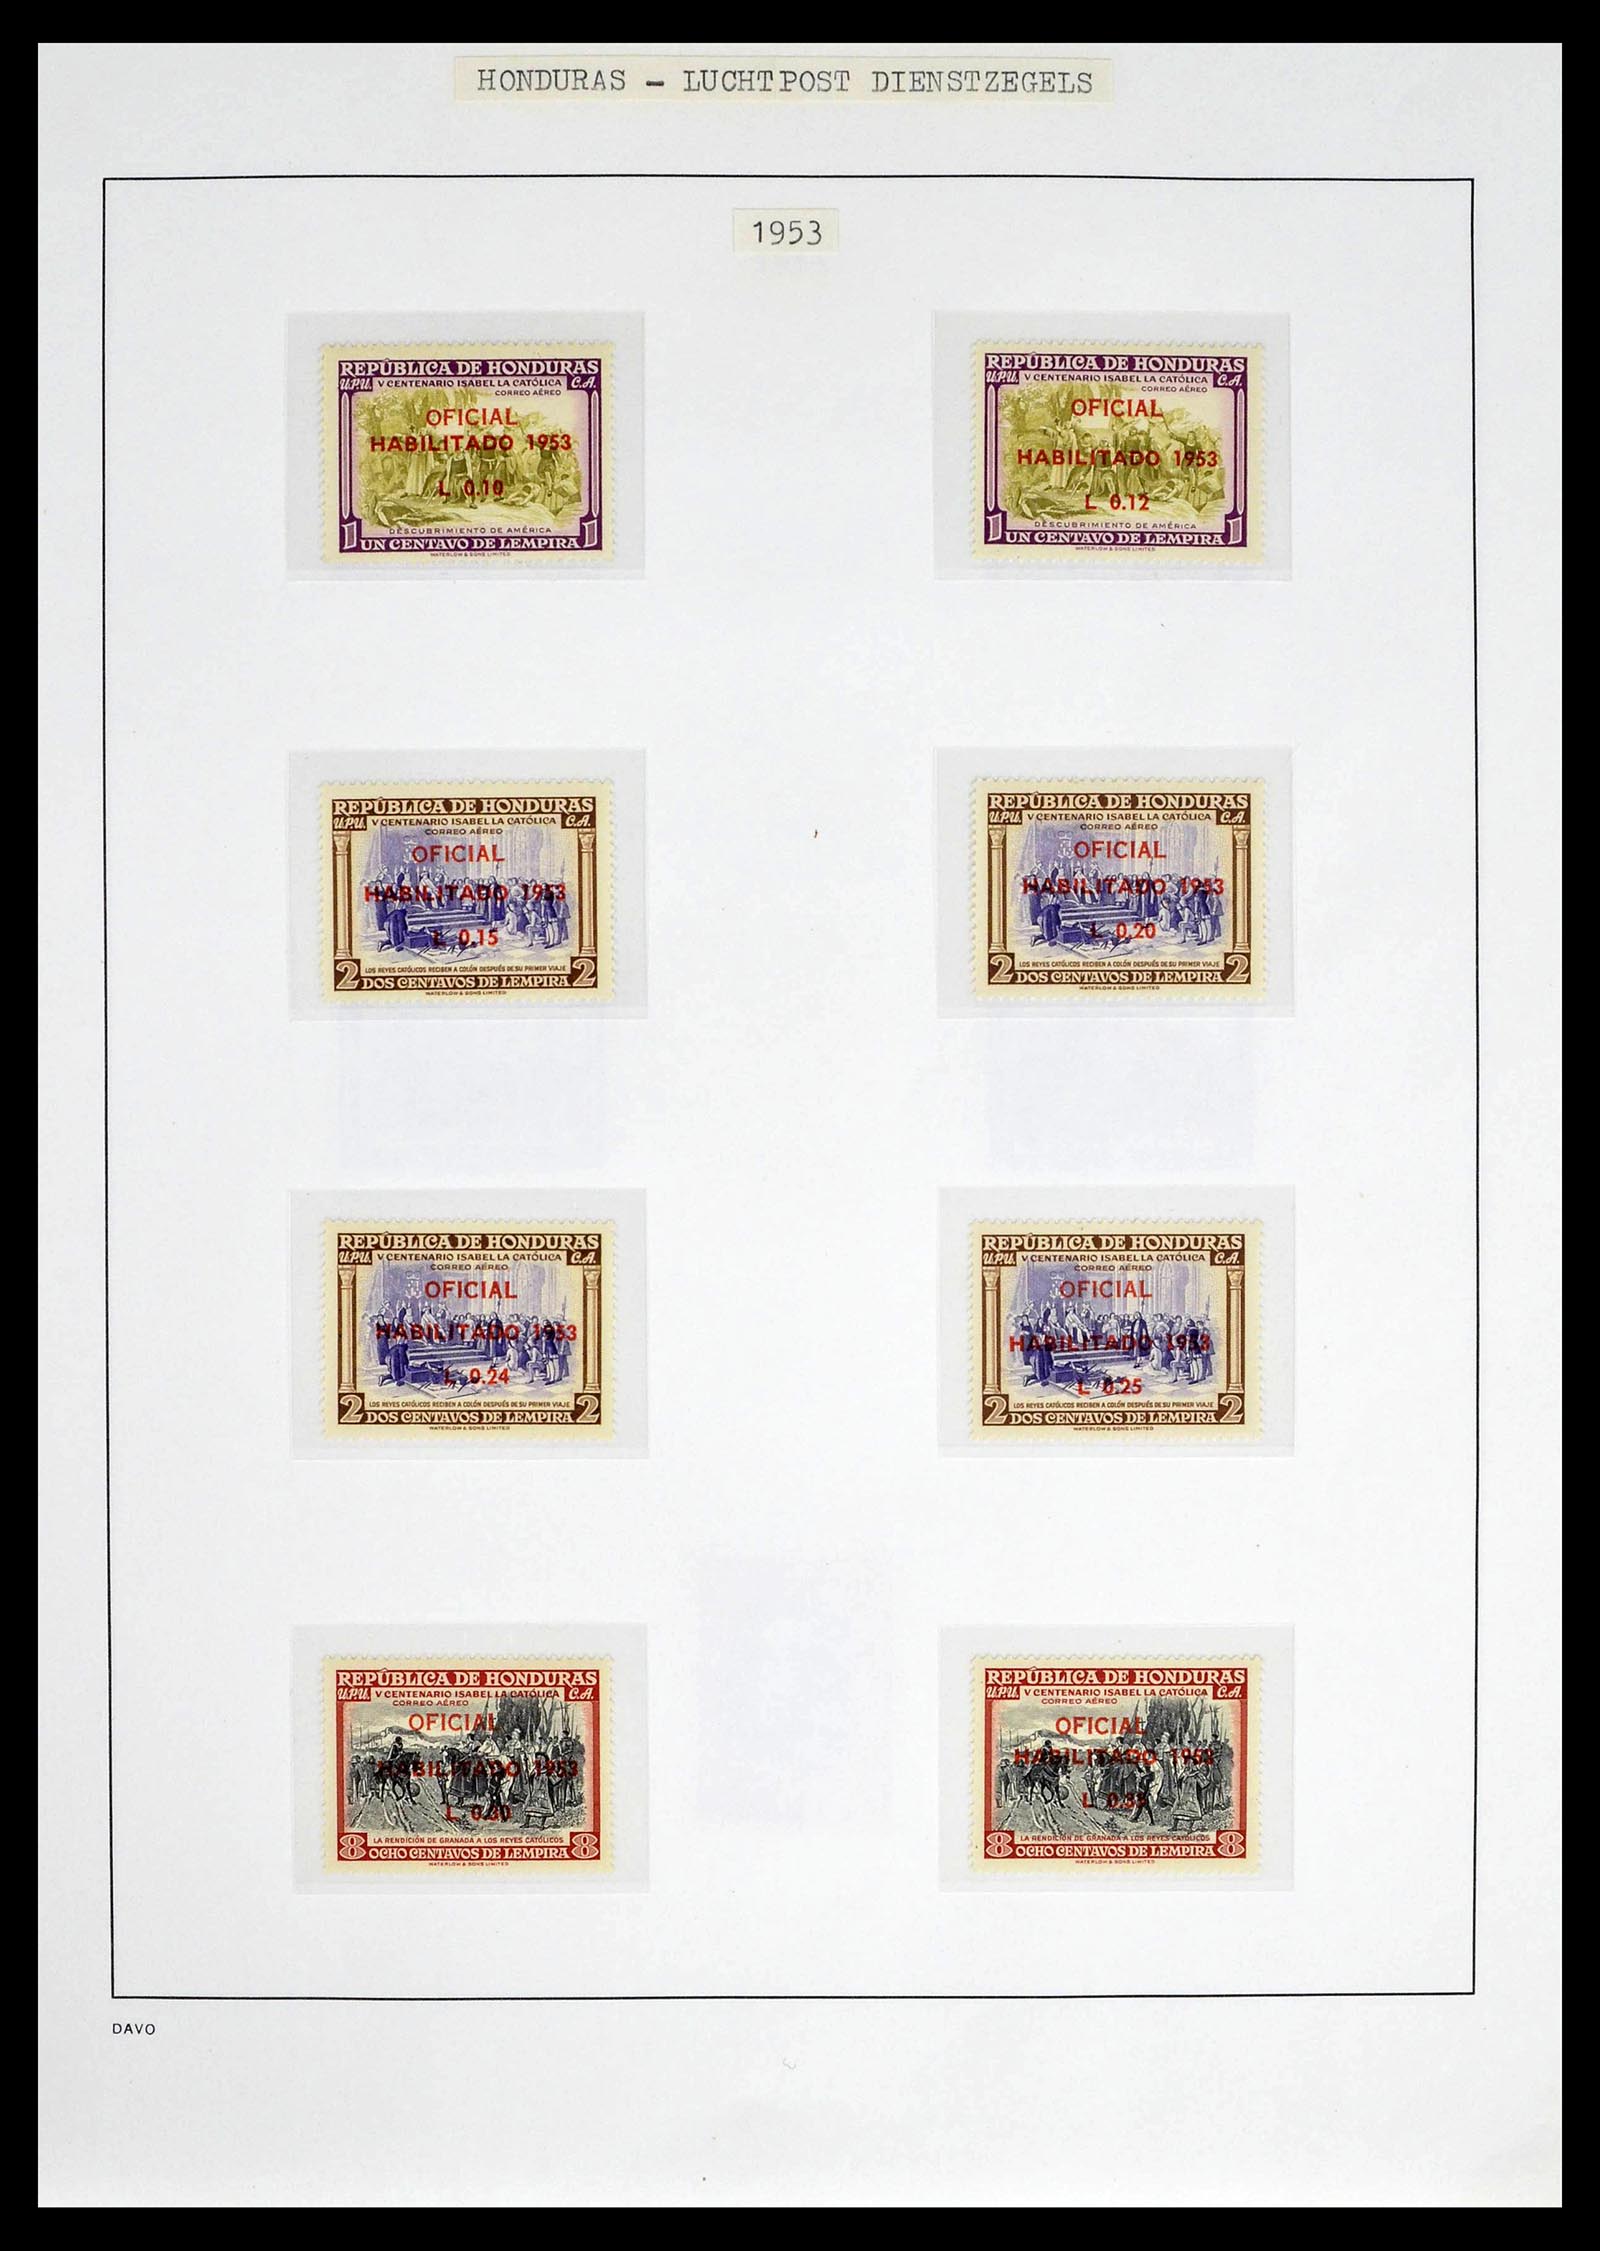 39404 0028 - Postzegelverzameling 39404 Honduras dienstzegels 1890-1974.